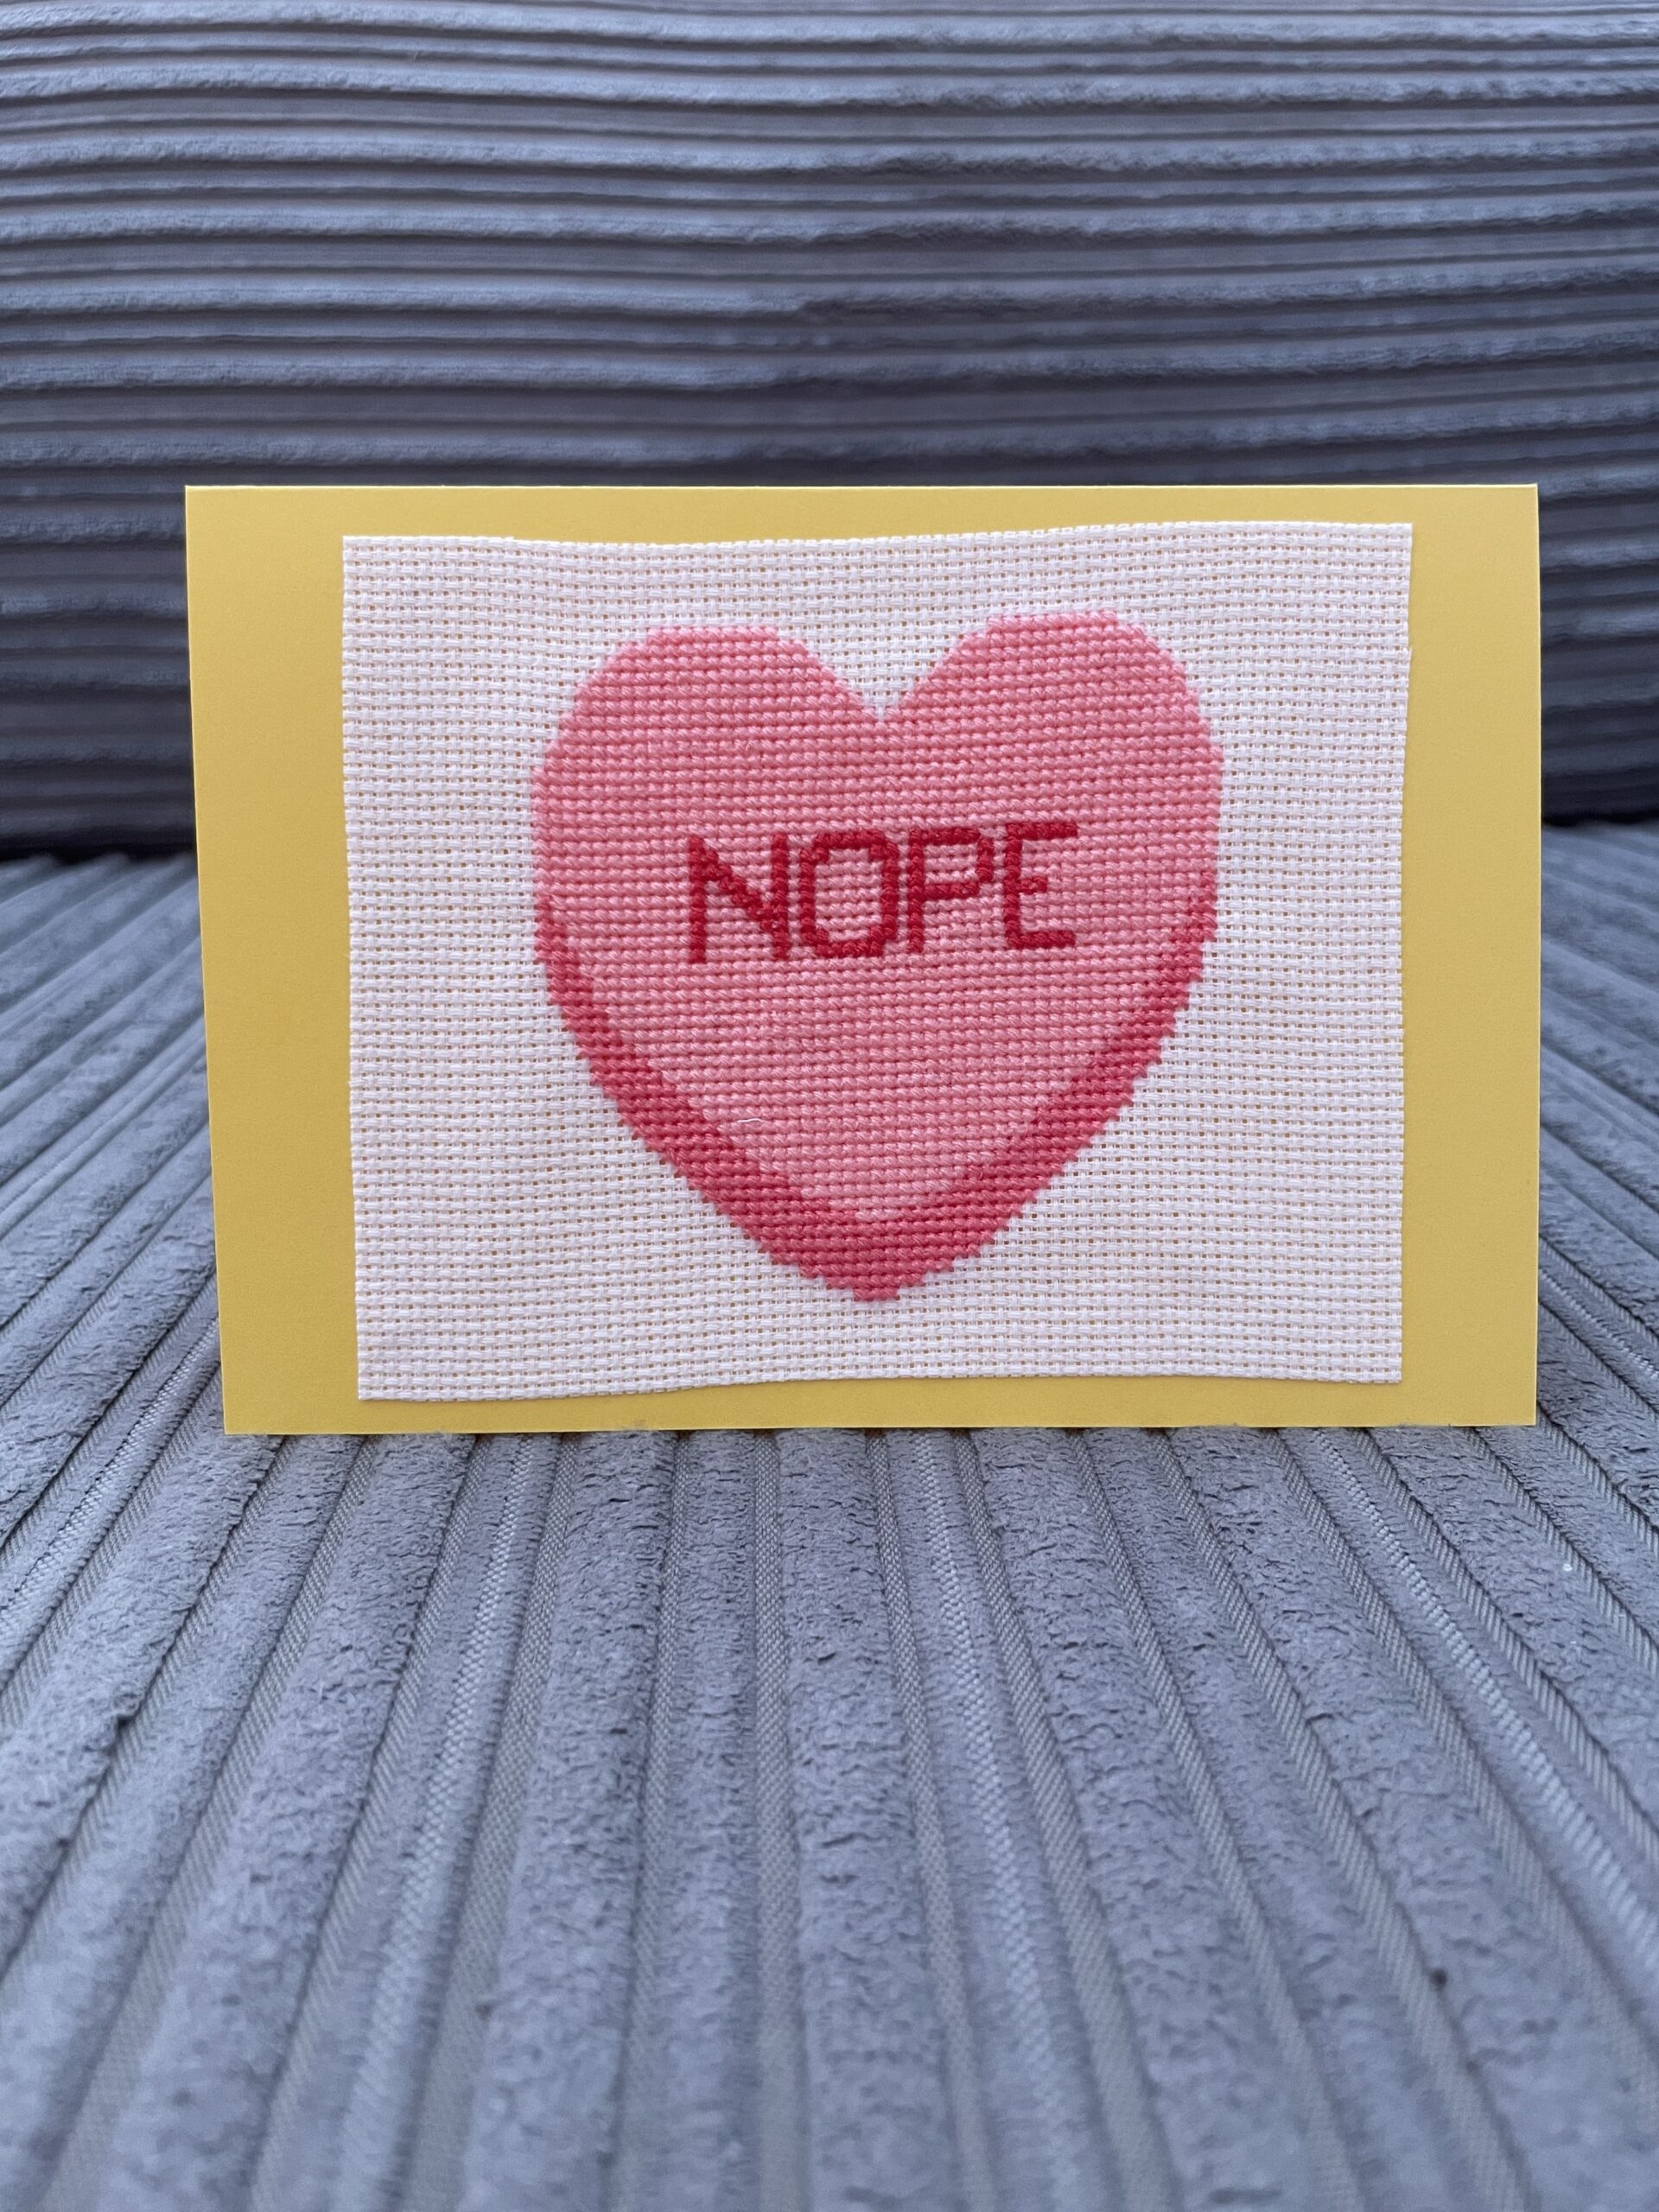 Een gele postkaart met daarop een cross stitch van een roze hart met 'nope' erin geschreven.